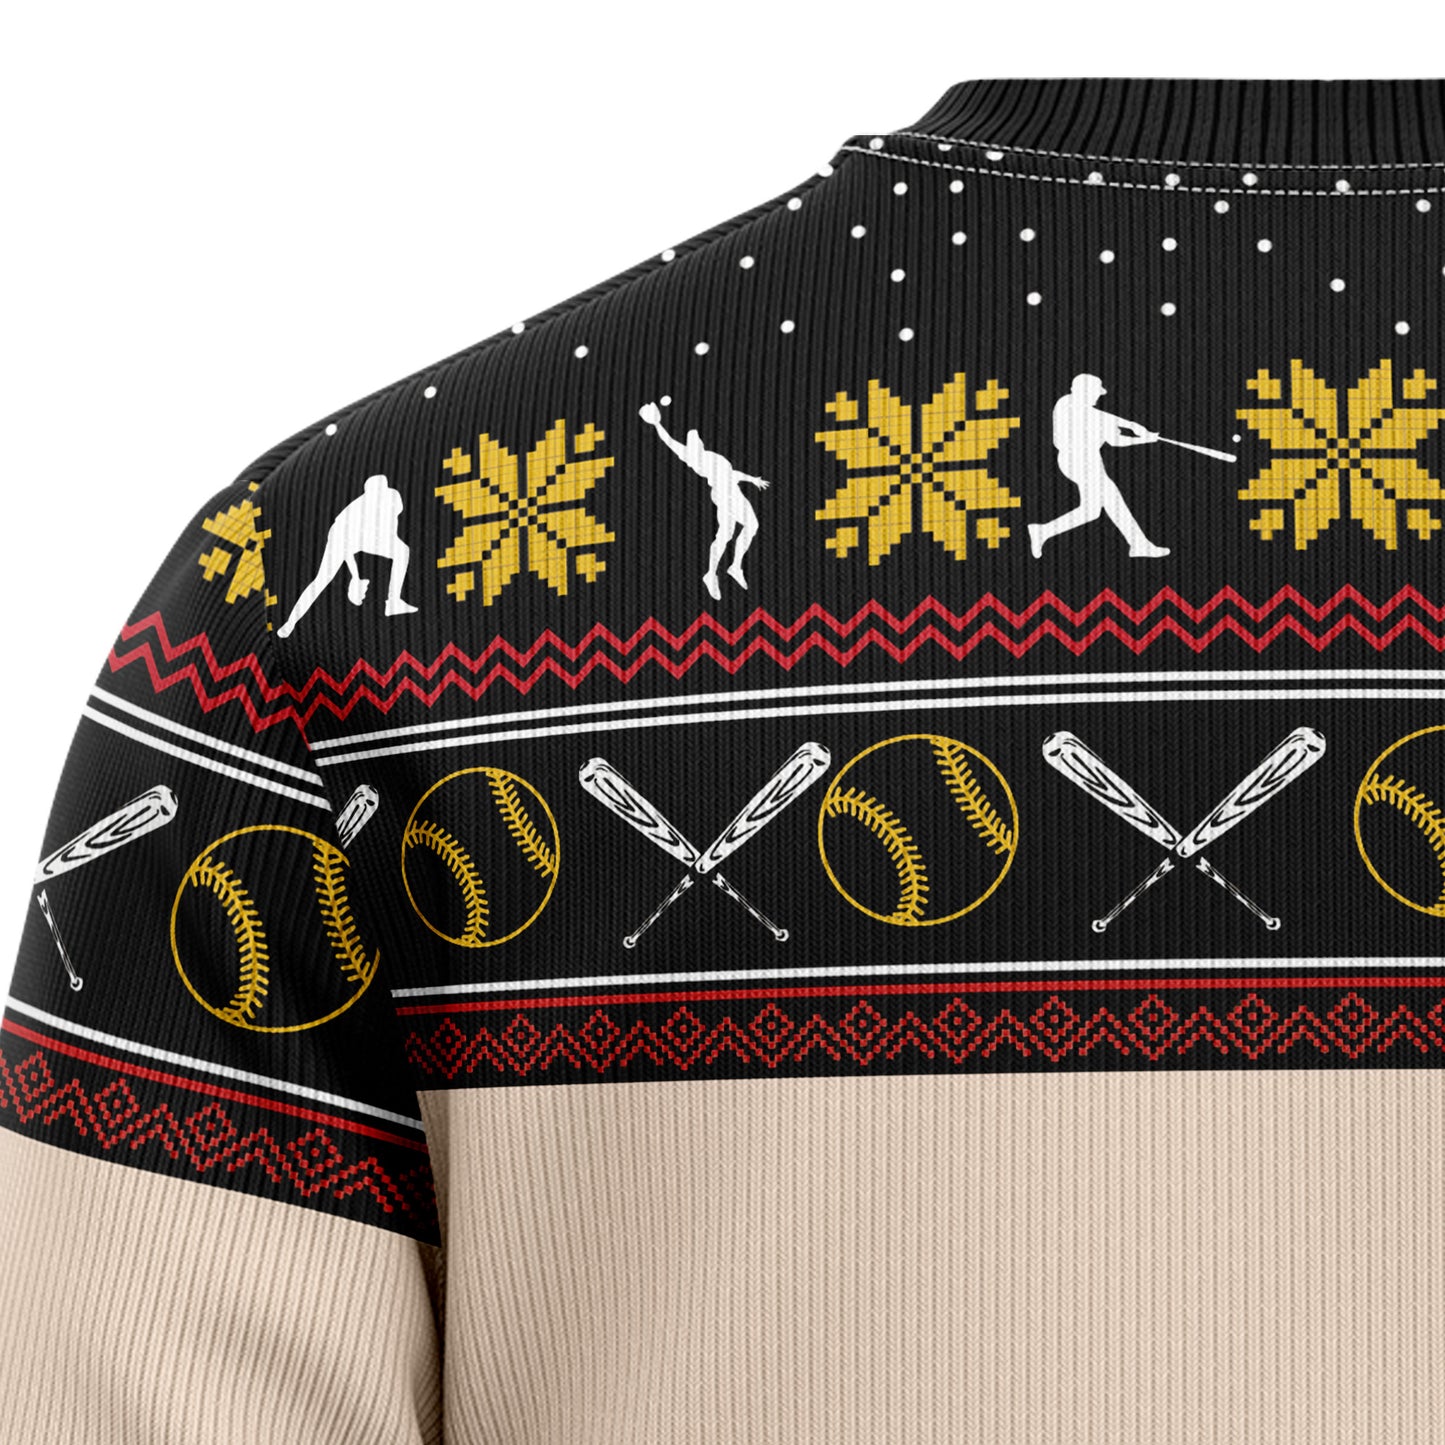 Christmas Time For Baseball T0611 Ugly Christmas Sweater